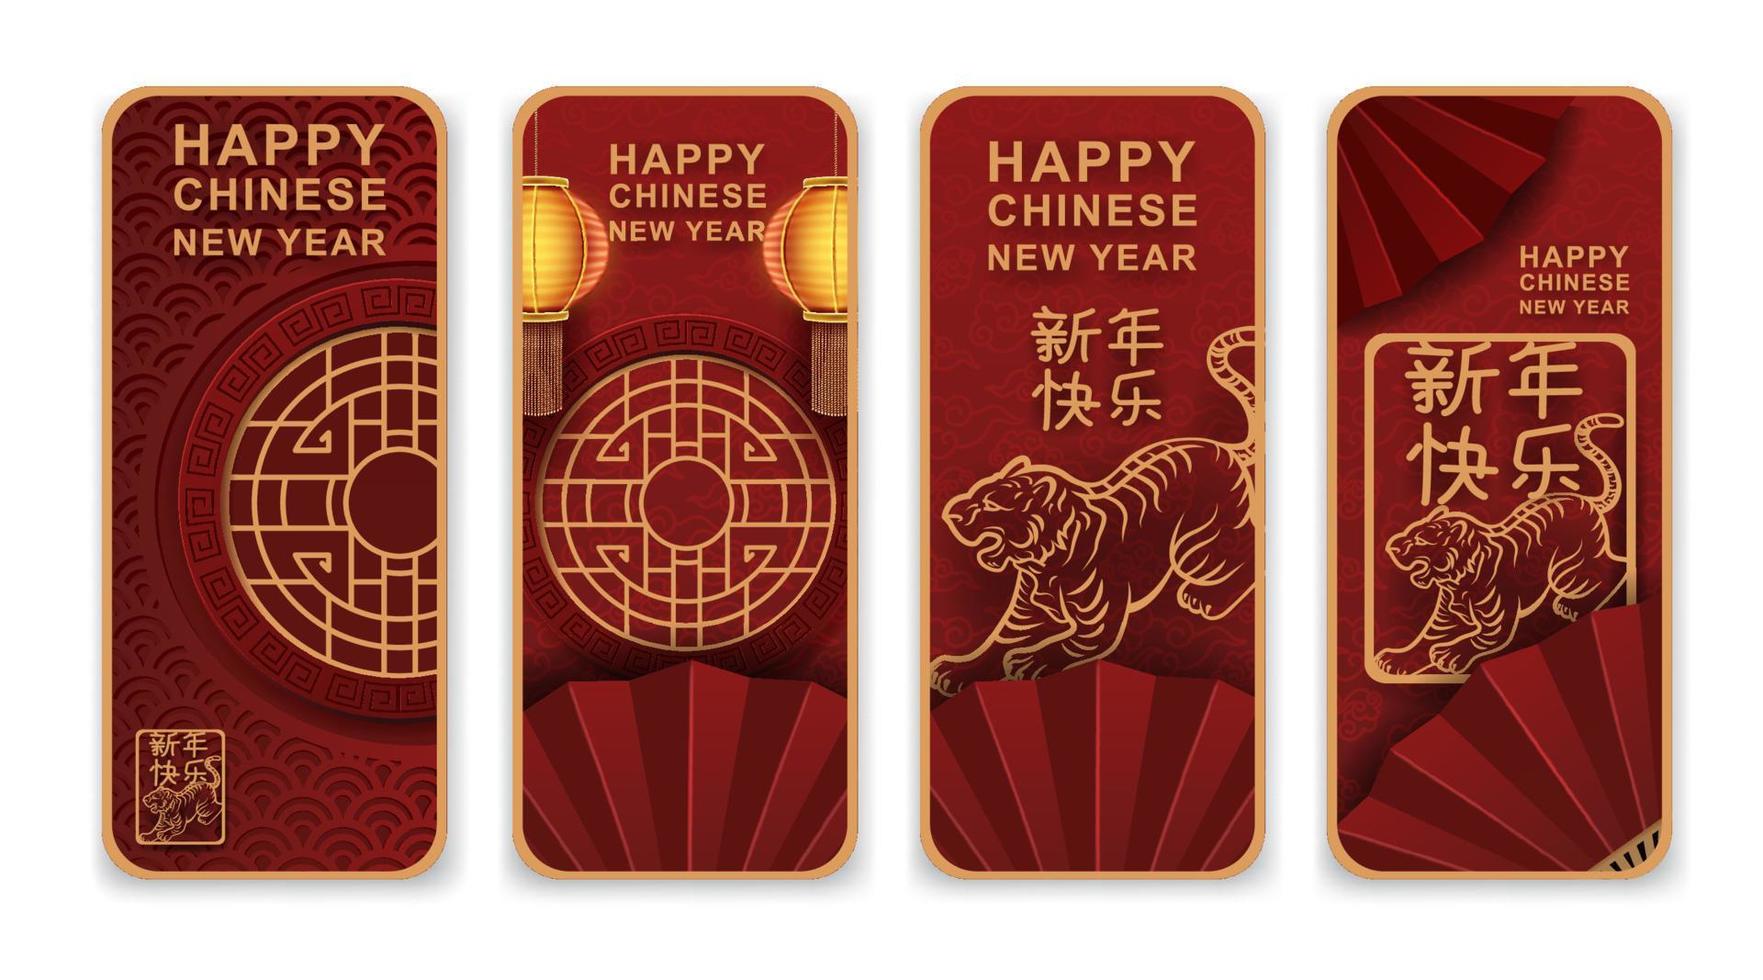 año nuevo chino y festivales con arte y artesanía en papel rojo. elementos asiáticos. traducción año nuevo chino 2022 año del tigre. vector